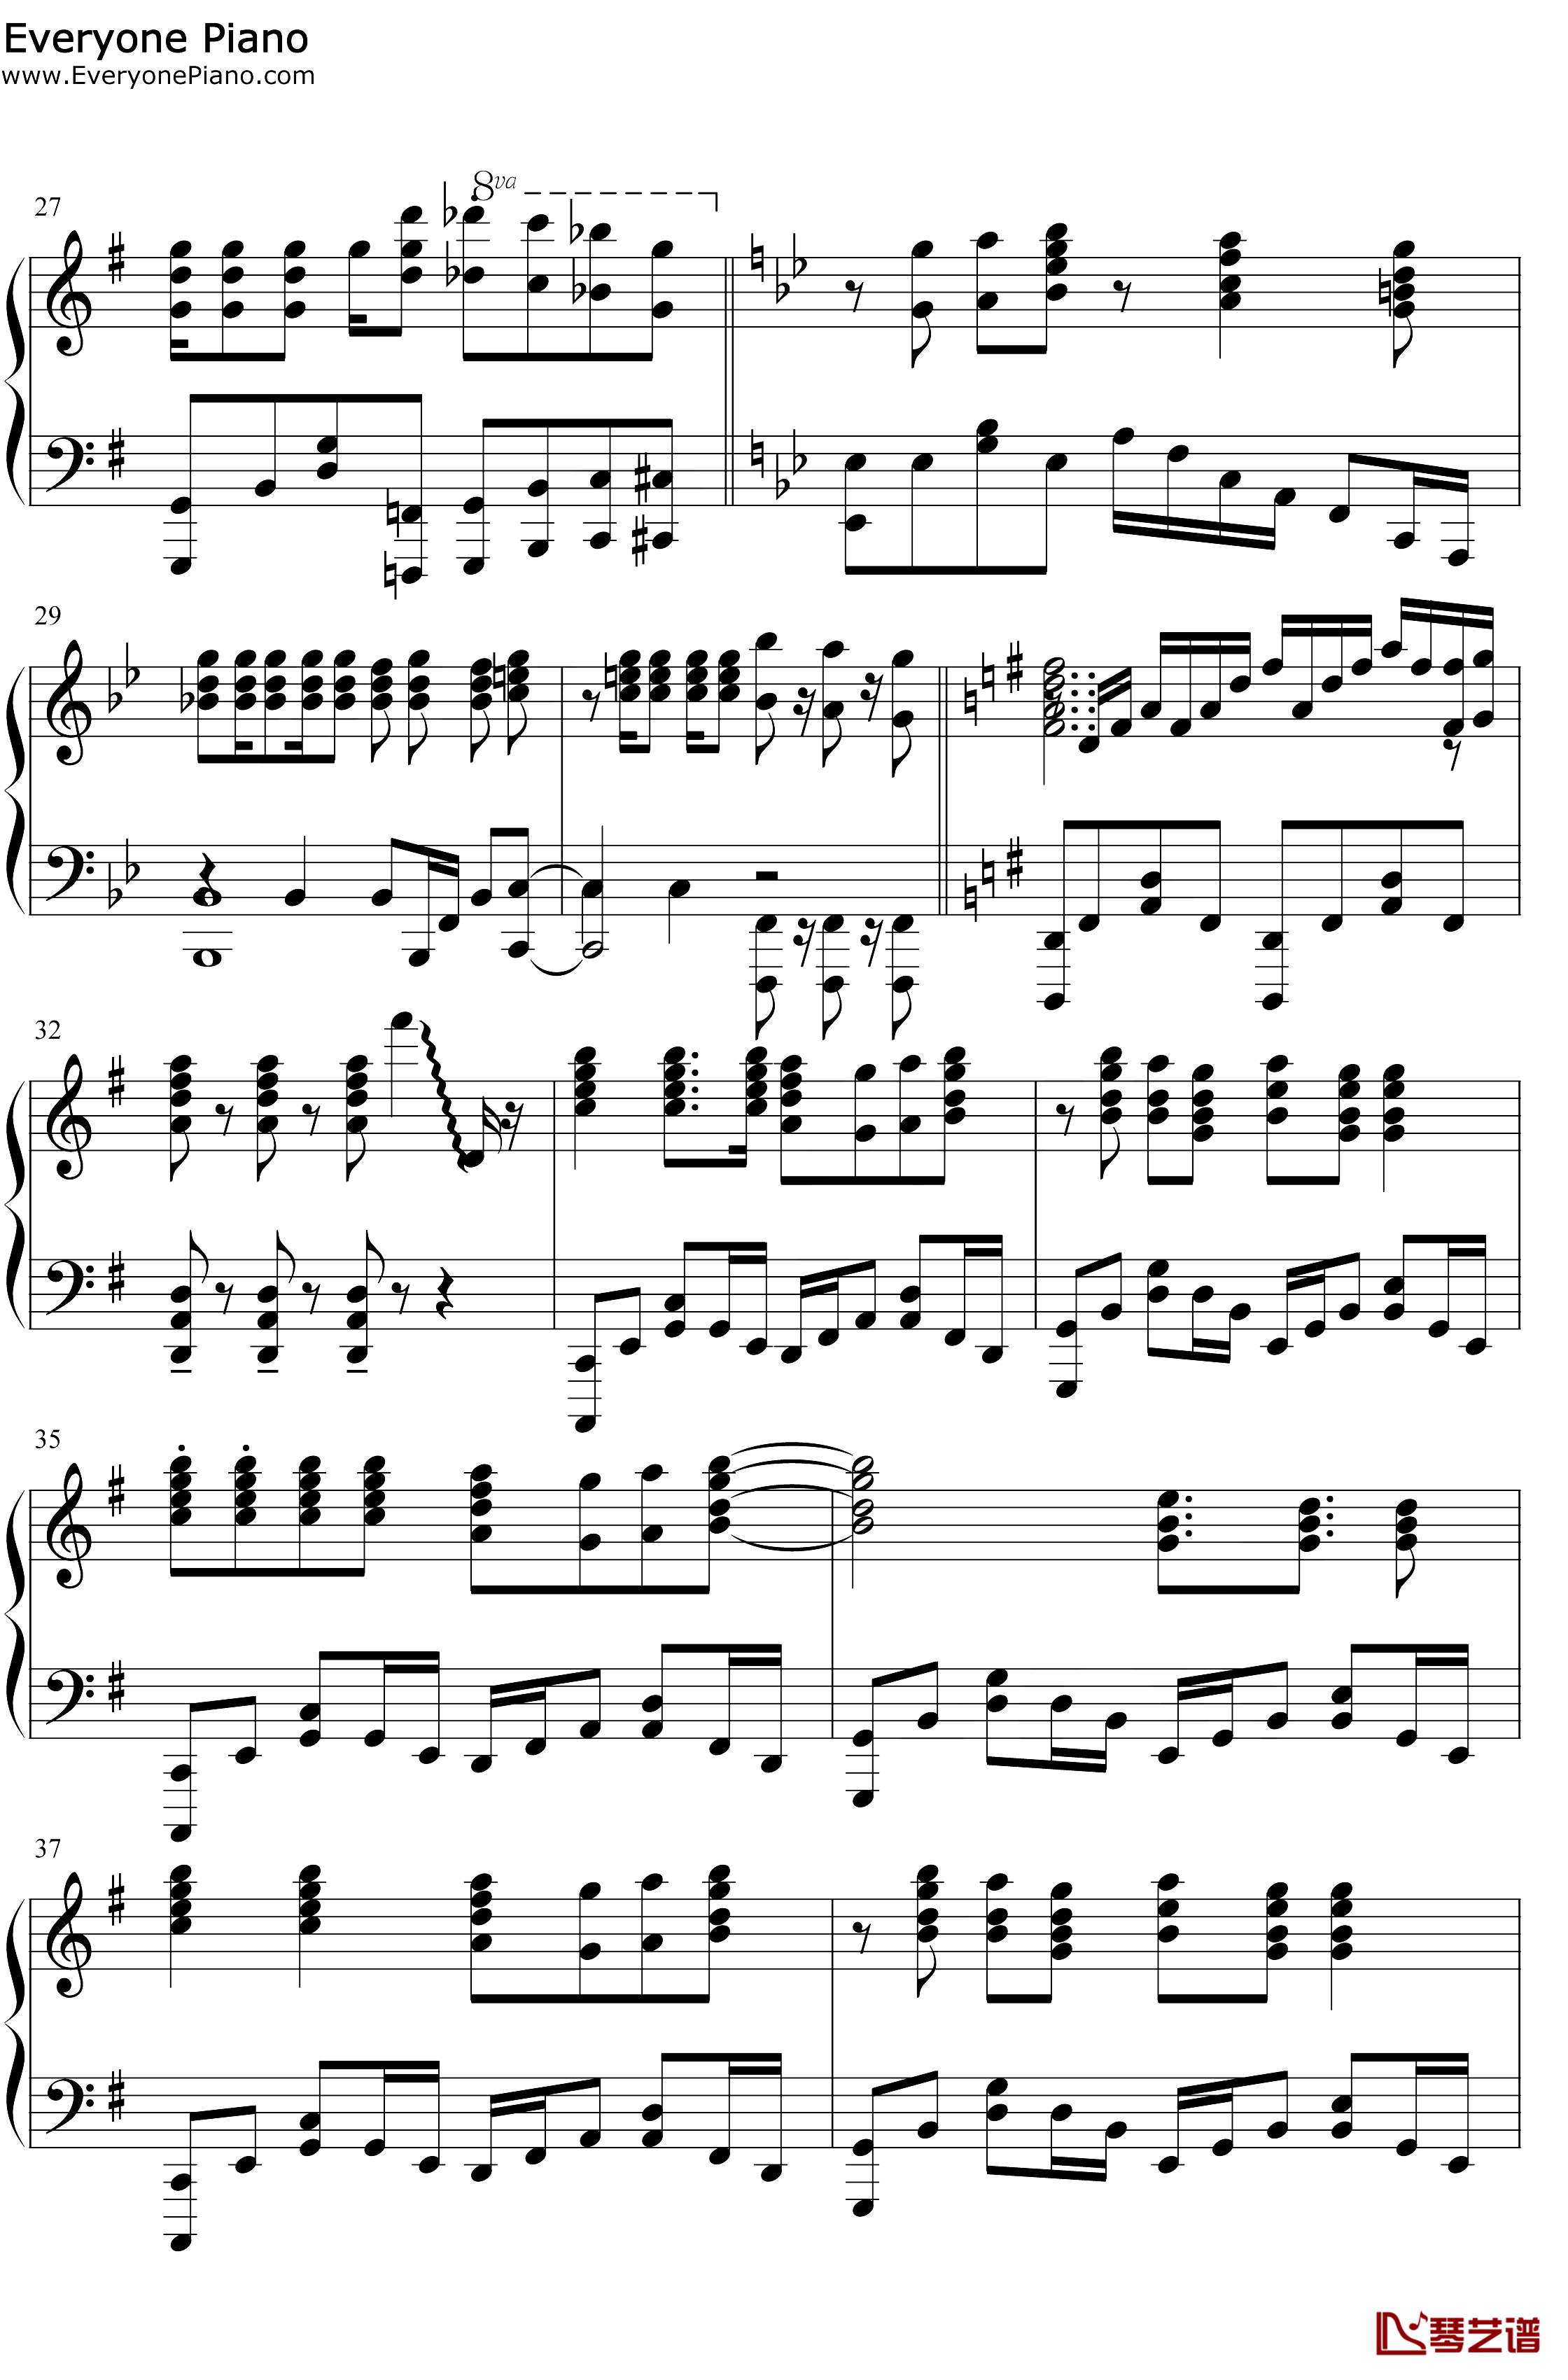 スマイルスキル=スキスキル钢琴谱-麦露烈娜梅维丝珀琳-我不是说了能力要平均值么OP4